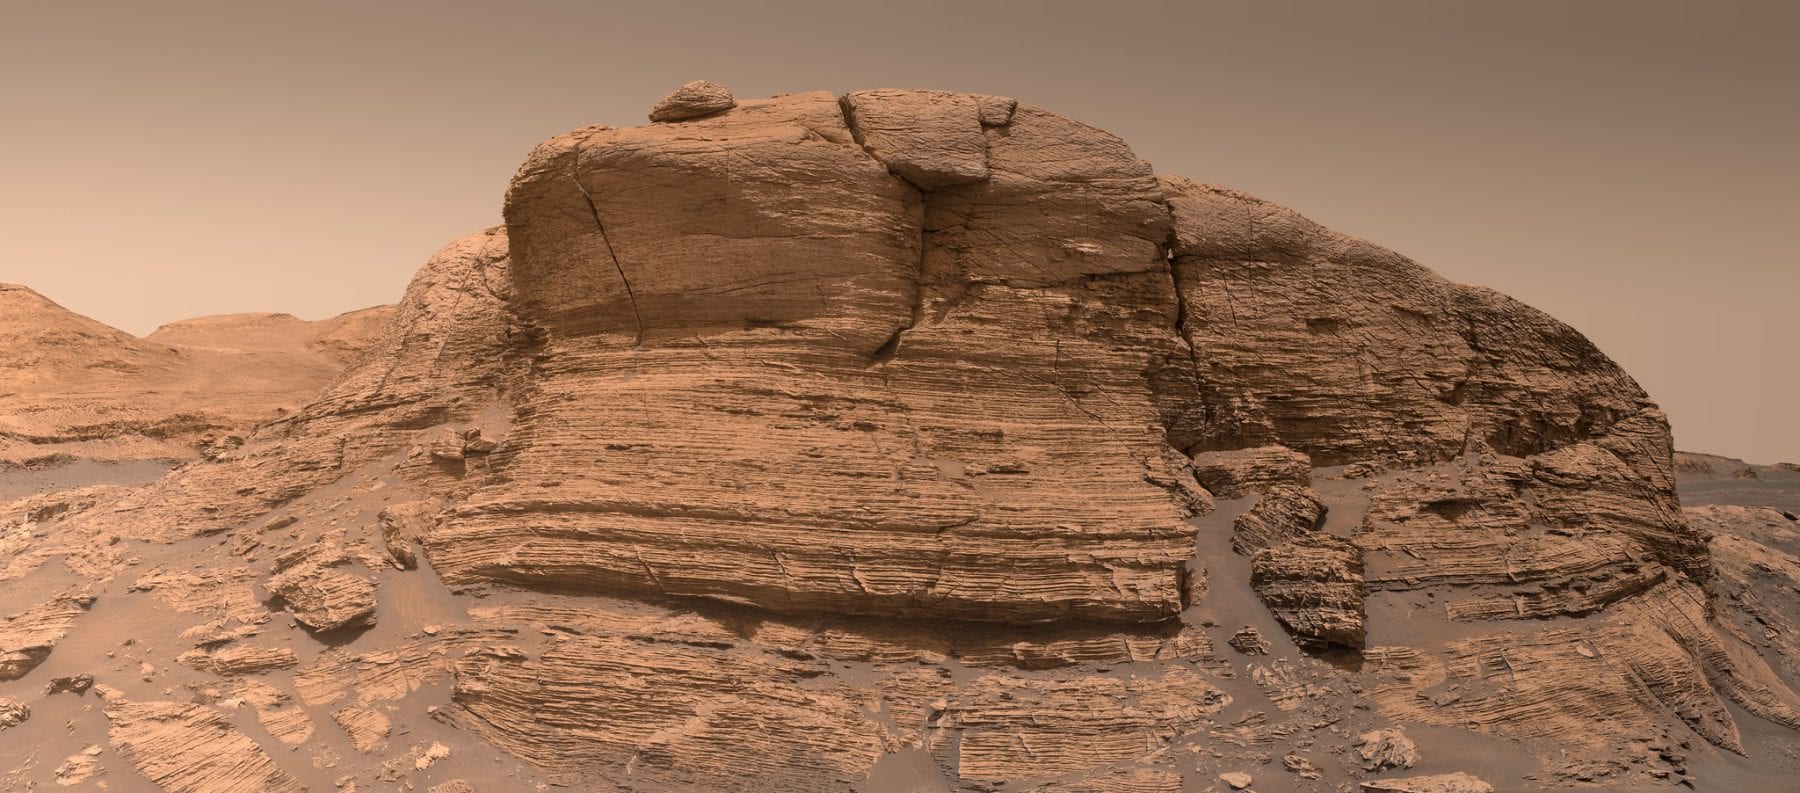 Это было первое панорамное изображение Мон-Мерку с высоким разрешением, отправленное марсоходом Curiosity. Предоставлено: NASA / JPL-Caltech / MSSS / Кевин М. Гилл - CC BY 2.0.